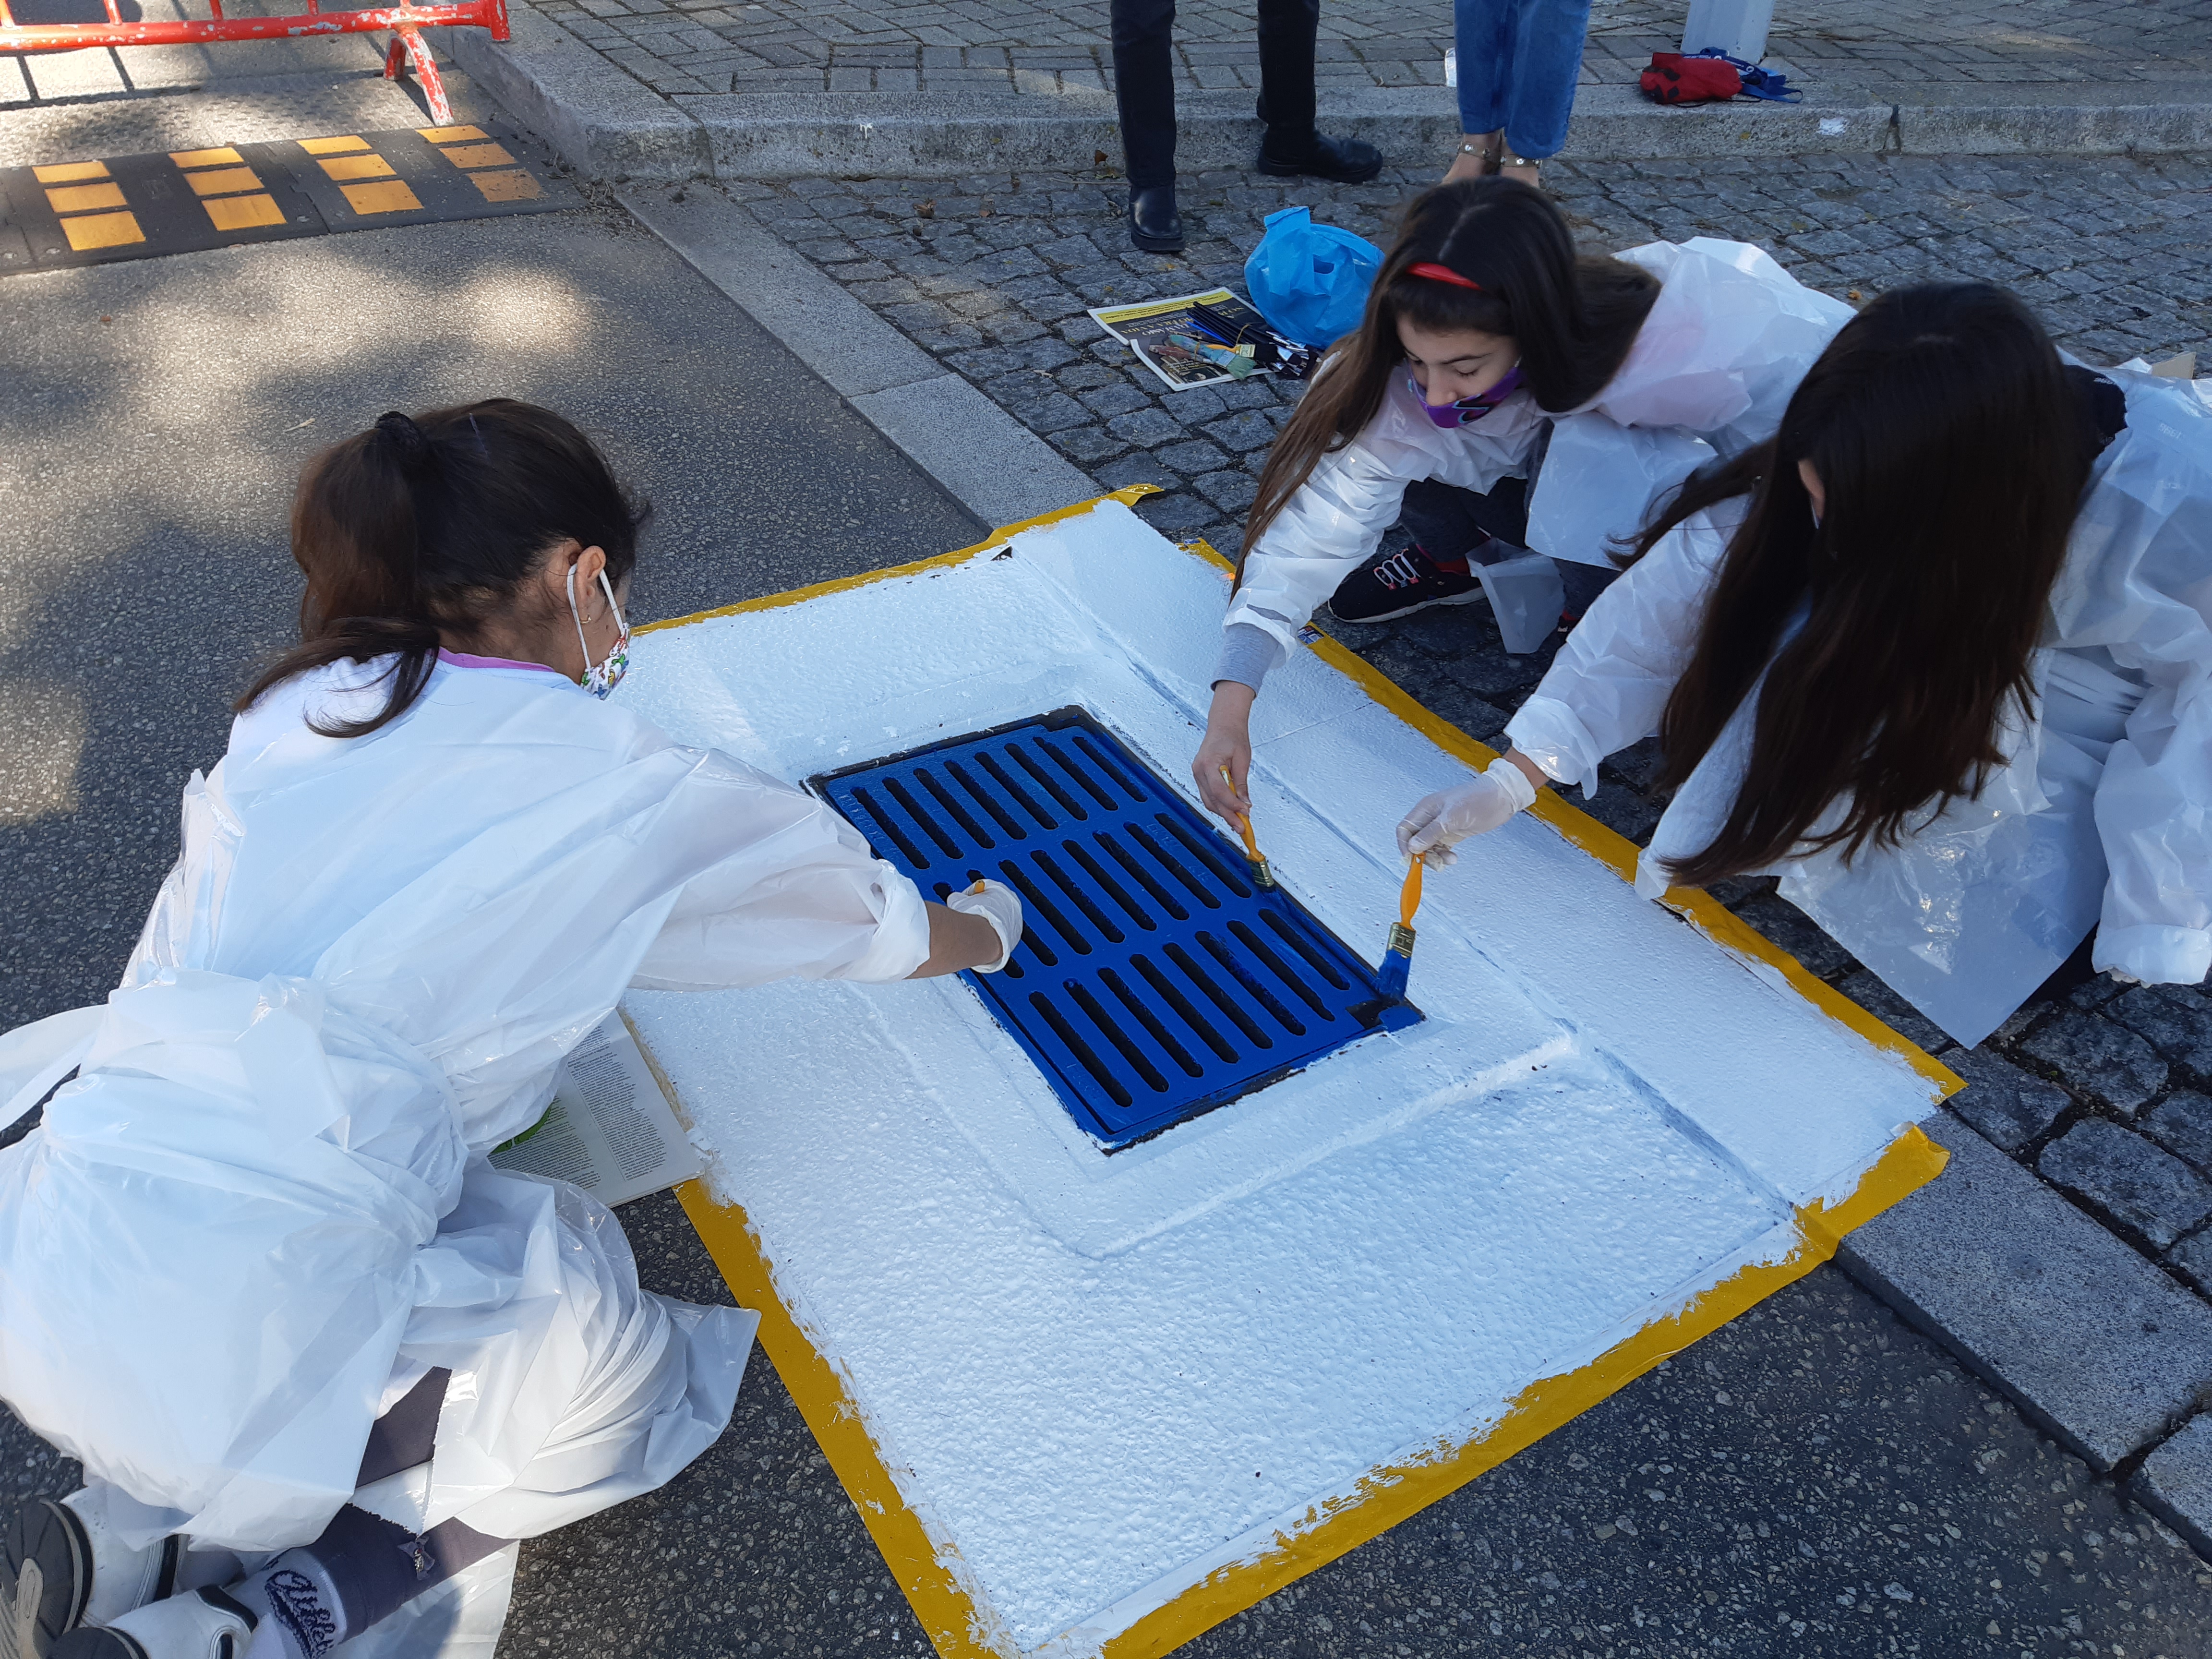 Preparação da sarjeta exterior a ser pintada, com o apoio e articulação da Polícia Municipal da Póvoa de Varzim.